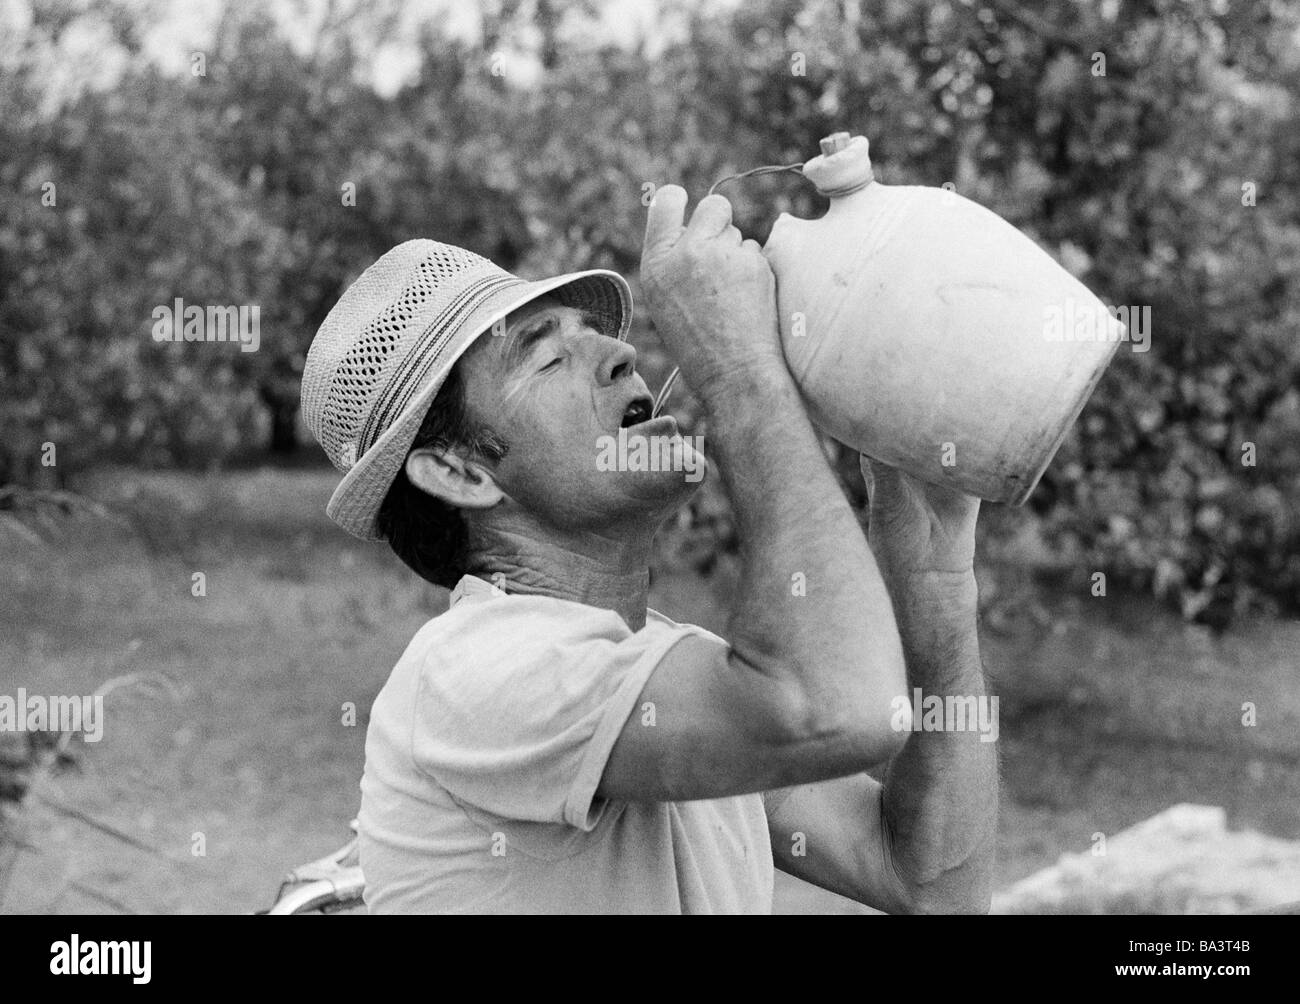 70er Jahre, schwarz / weiß Foto, Agrarwirtschaft, Feldarbeit, Landarbeiter in der Huerta in der Provinz Valencia Getränke Wasser aus einem Krug, im Alter von 40 bis 50 Jahre, Spanien, Valencia Stockfoto